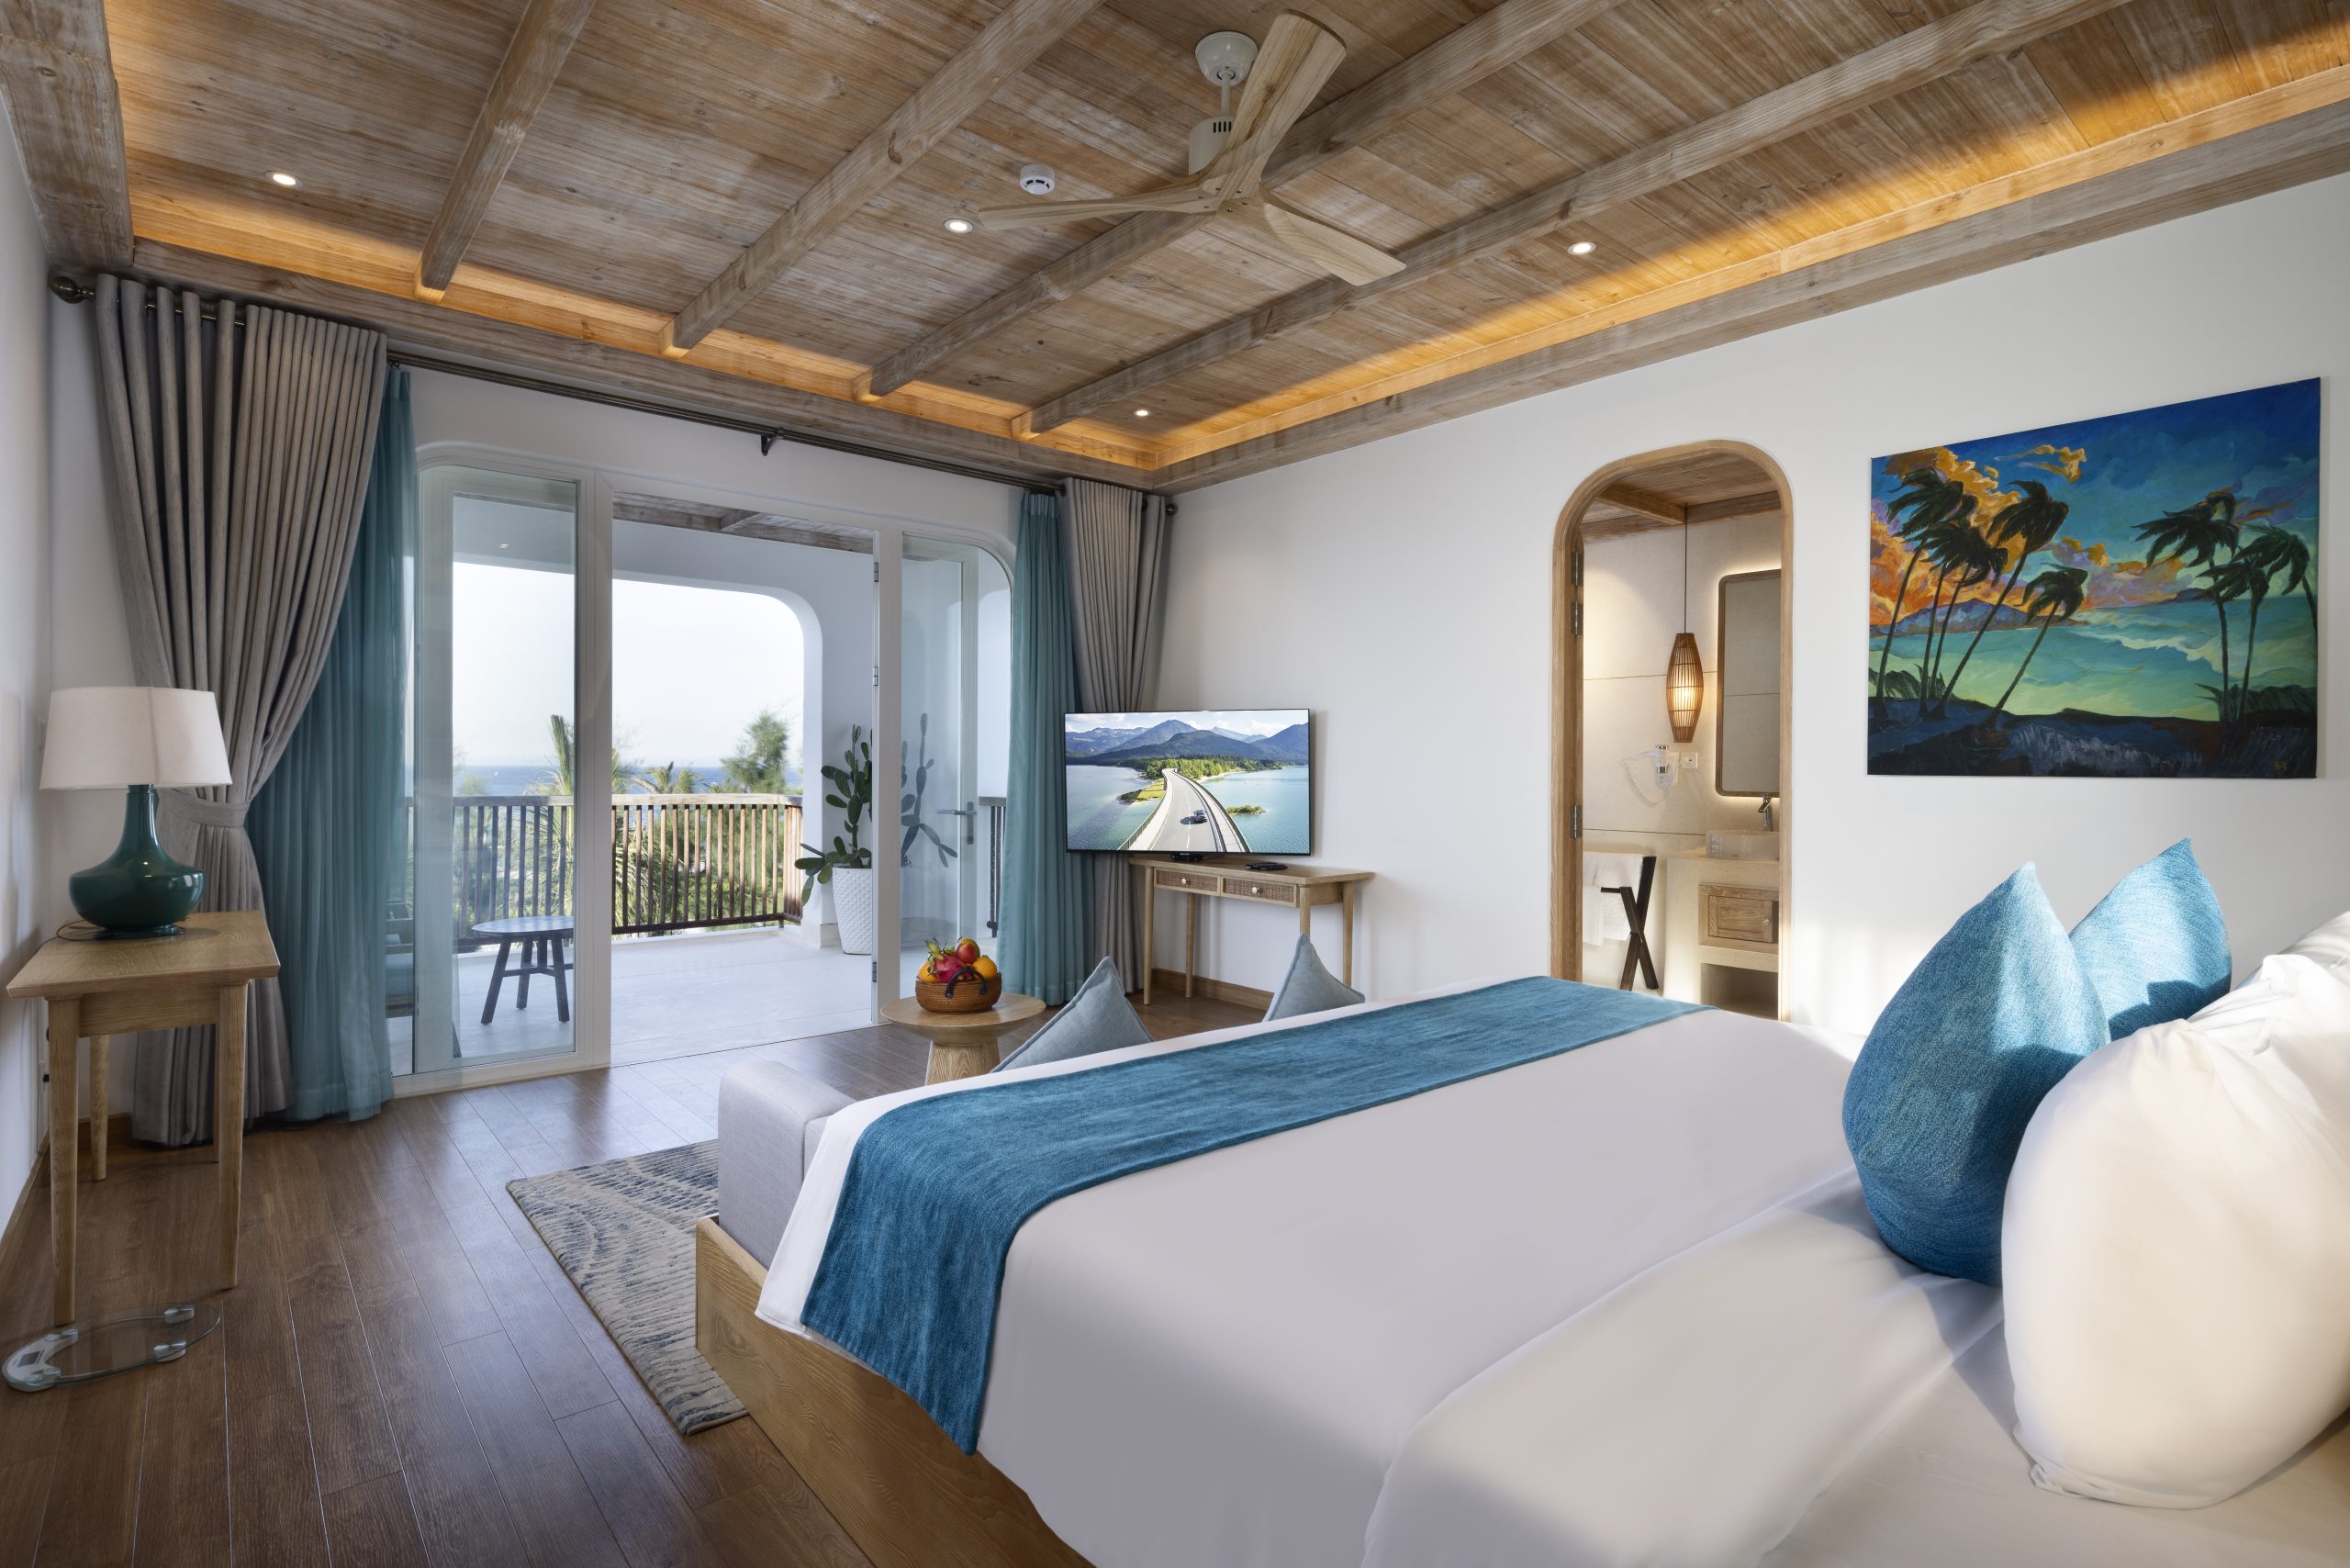 Resort nghỉ dưỡng Phú Yên - Phòng nghỉ ngơi đậm chất Địa Trung Hải